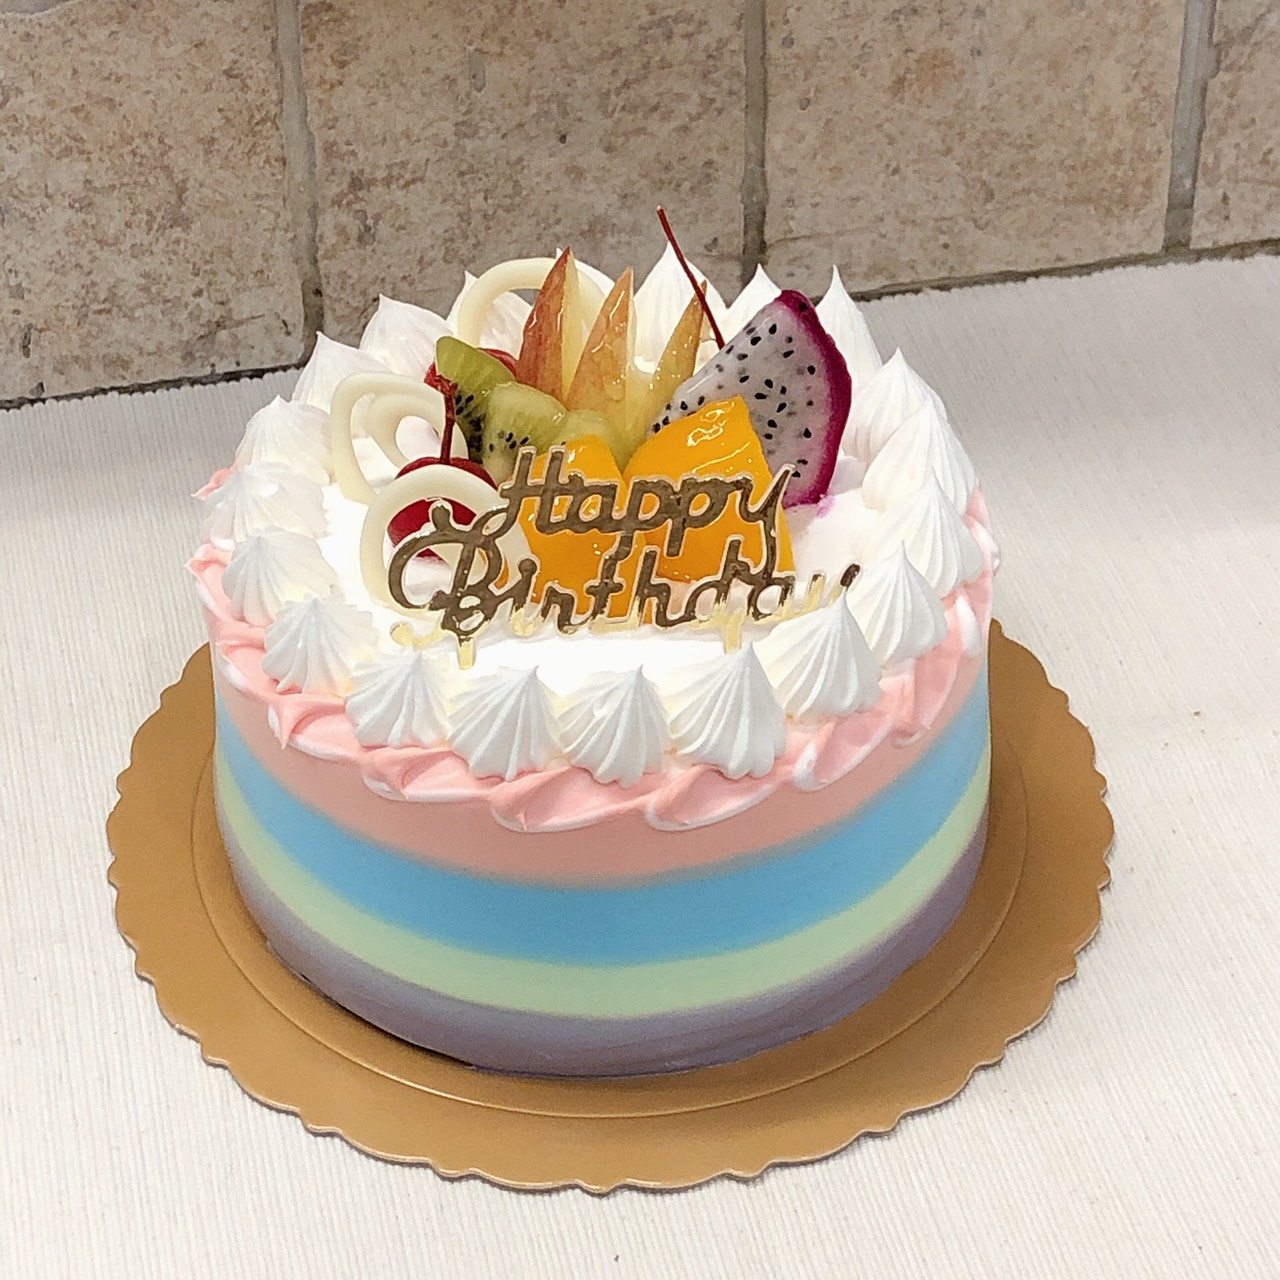 沉浸式做蛋糕 / 8寸彩虹蛋糕-BONBONCAKE-BONBONCAKE-哔哩哔哩视频